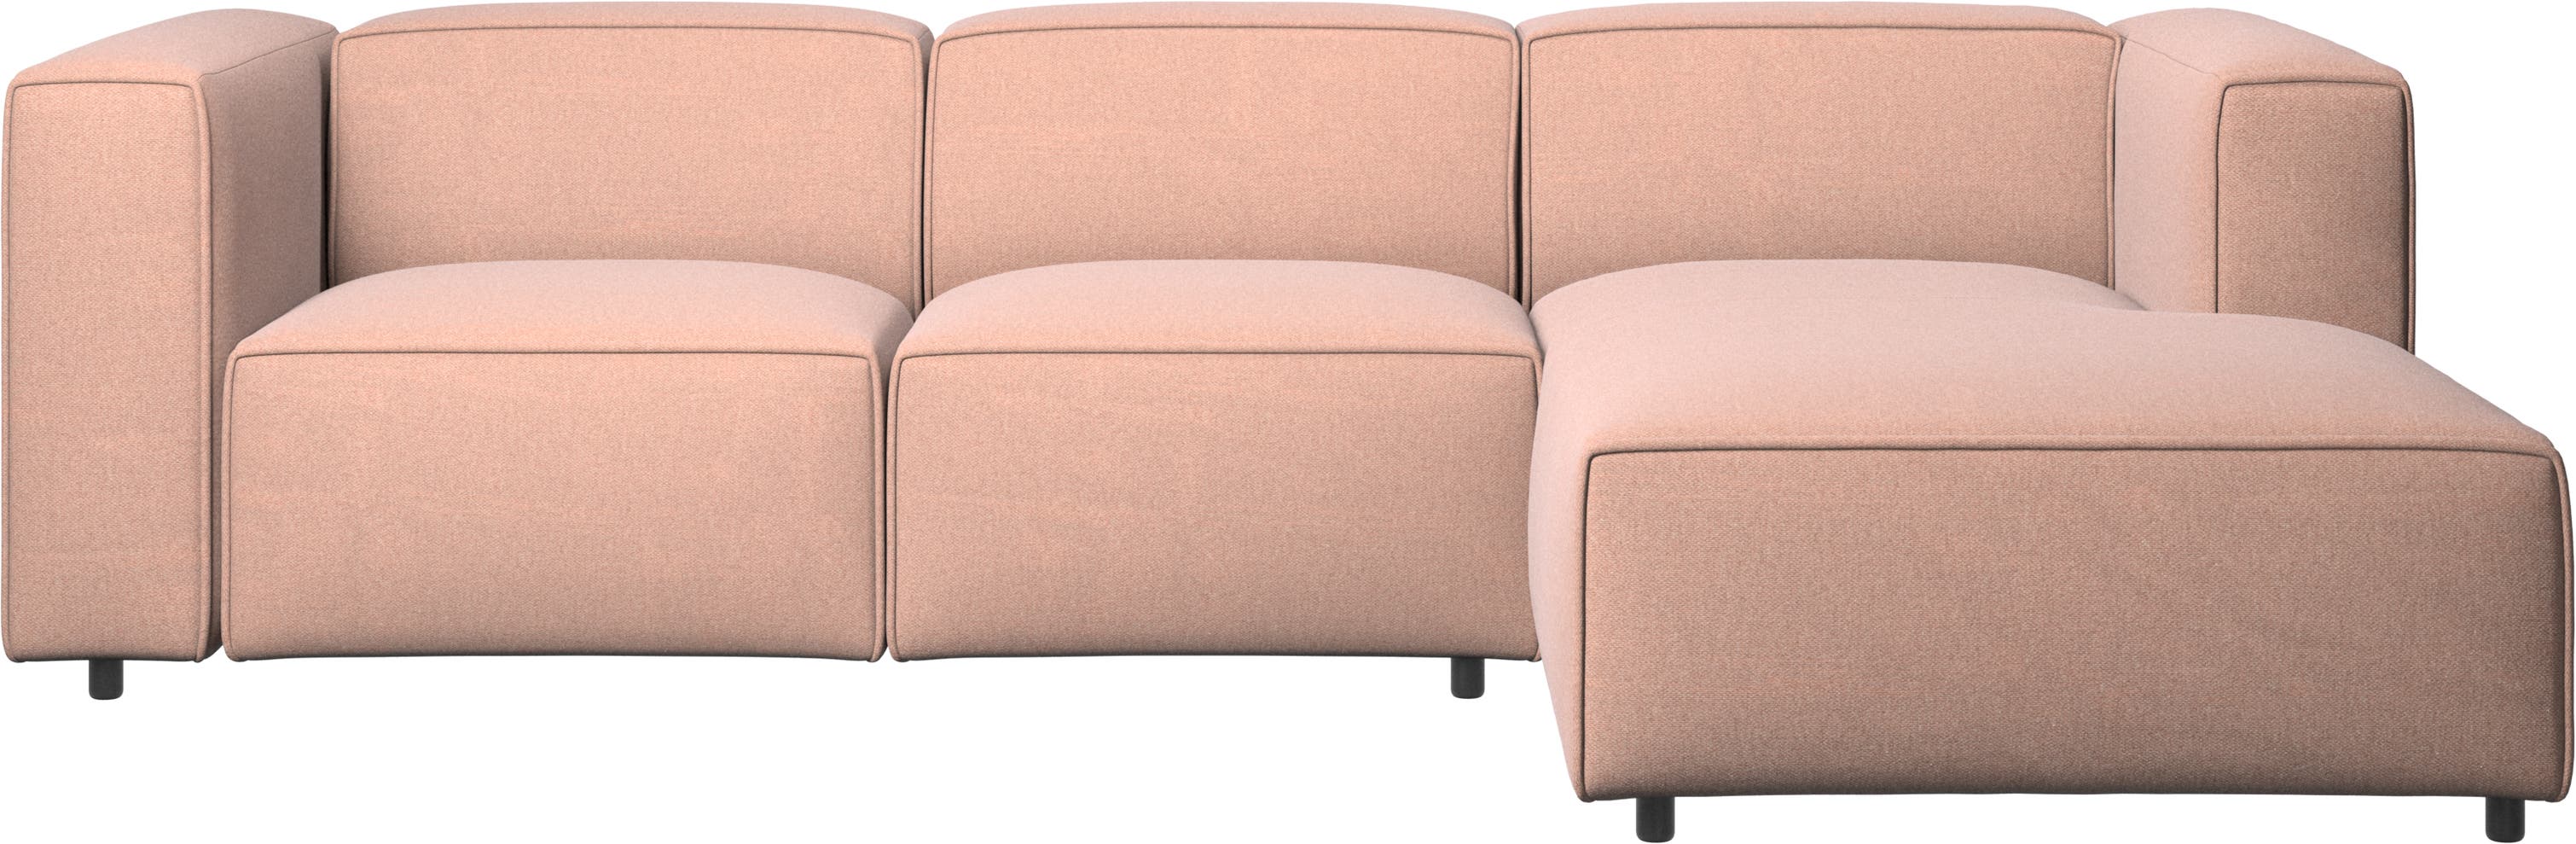 Carmo verstellbares Sofa mit Ruhemodul